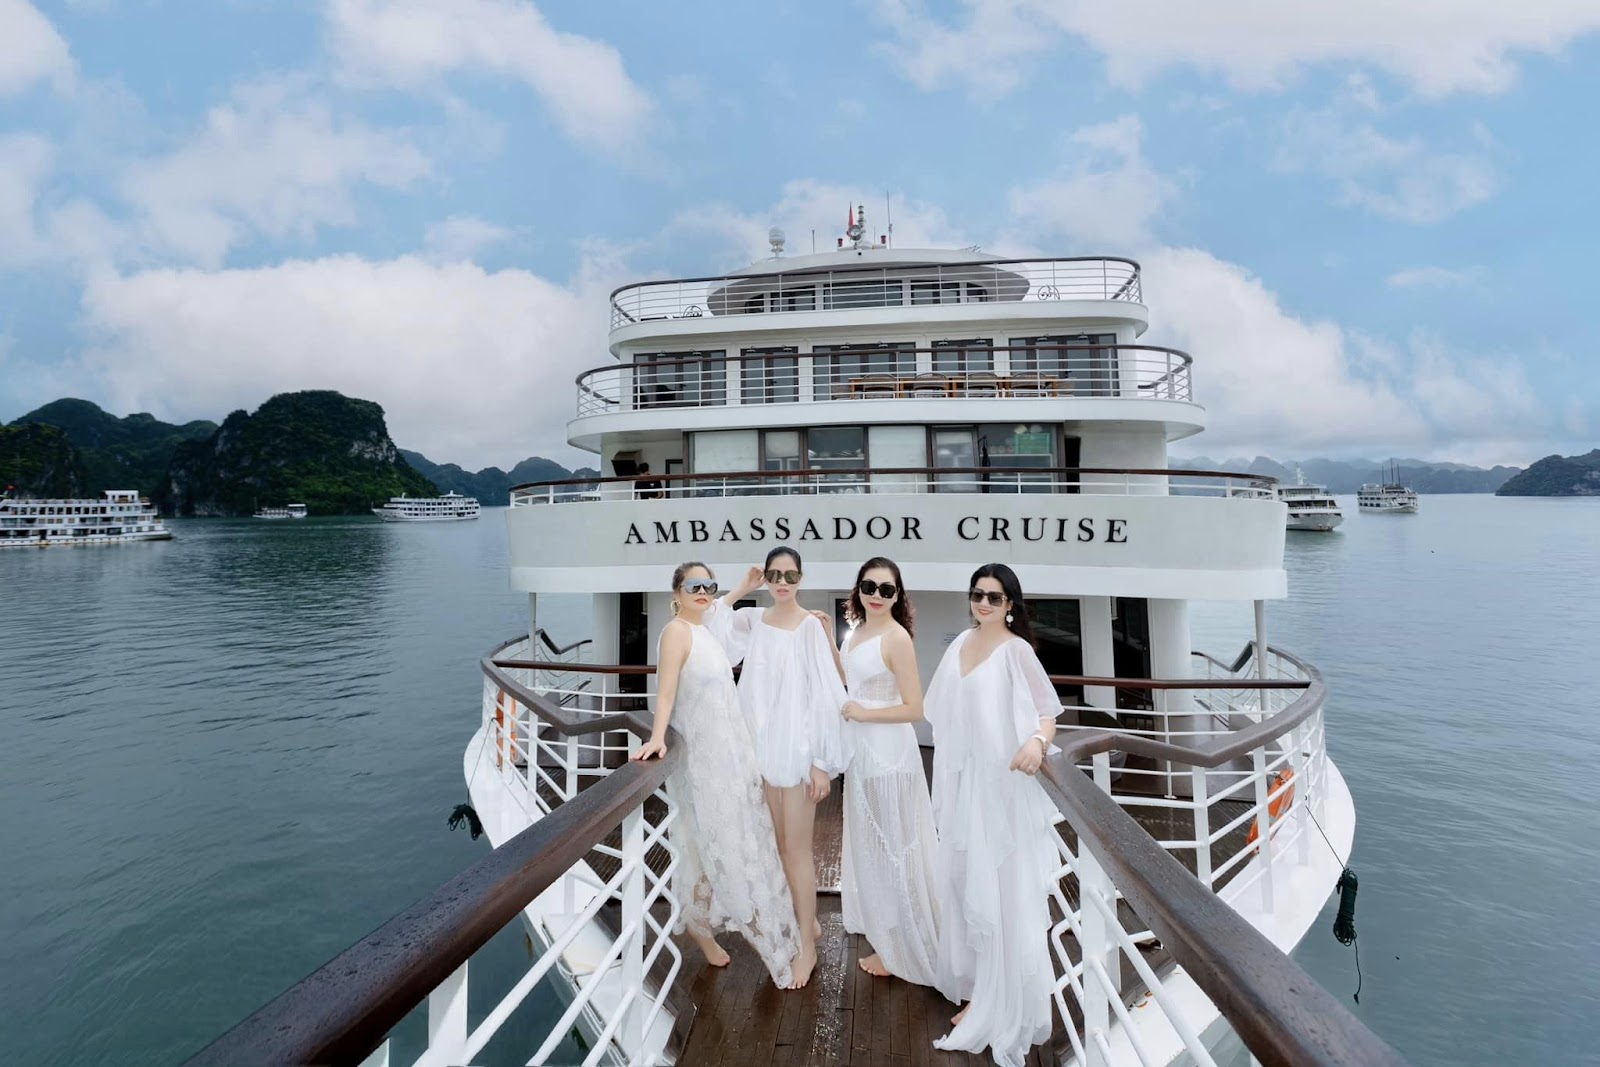 Khách hàng check in trên du thuyền Ambassador Cruise trong sự kiện Blue Sea tri ân khách hàng.